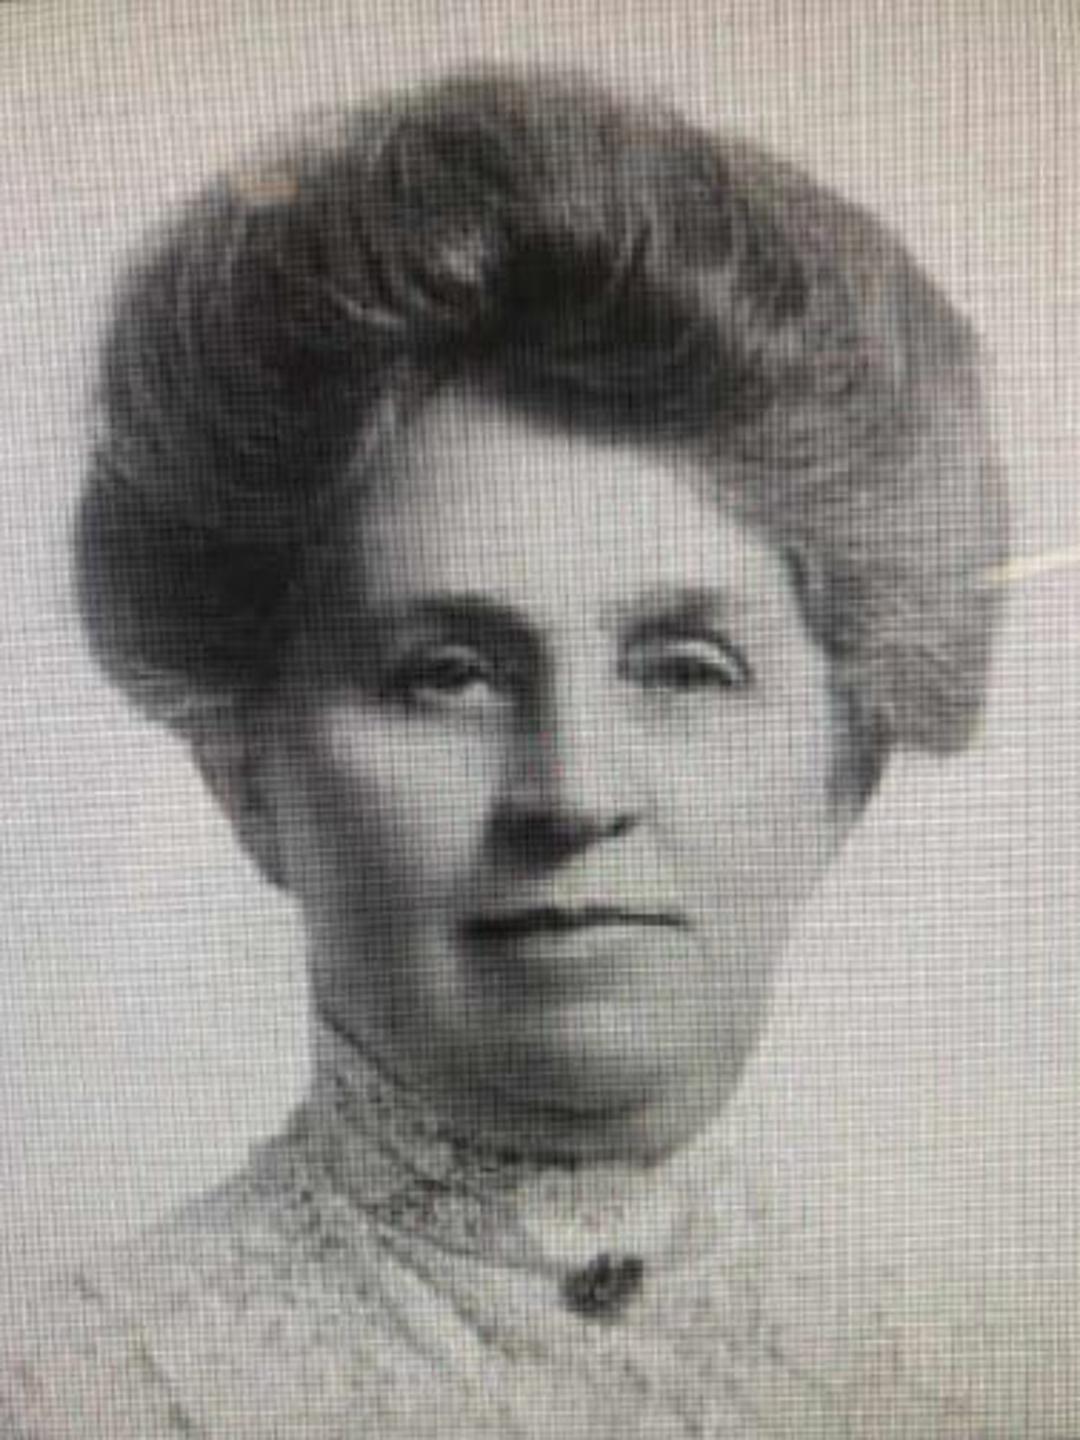 Seraph Cedenia Young (1846 - 1938) Profile